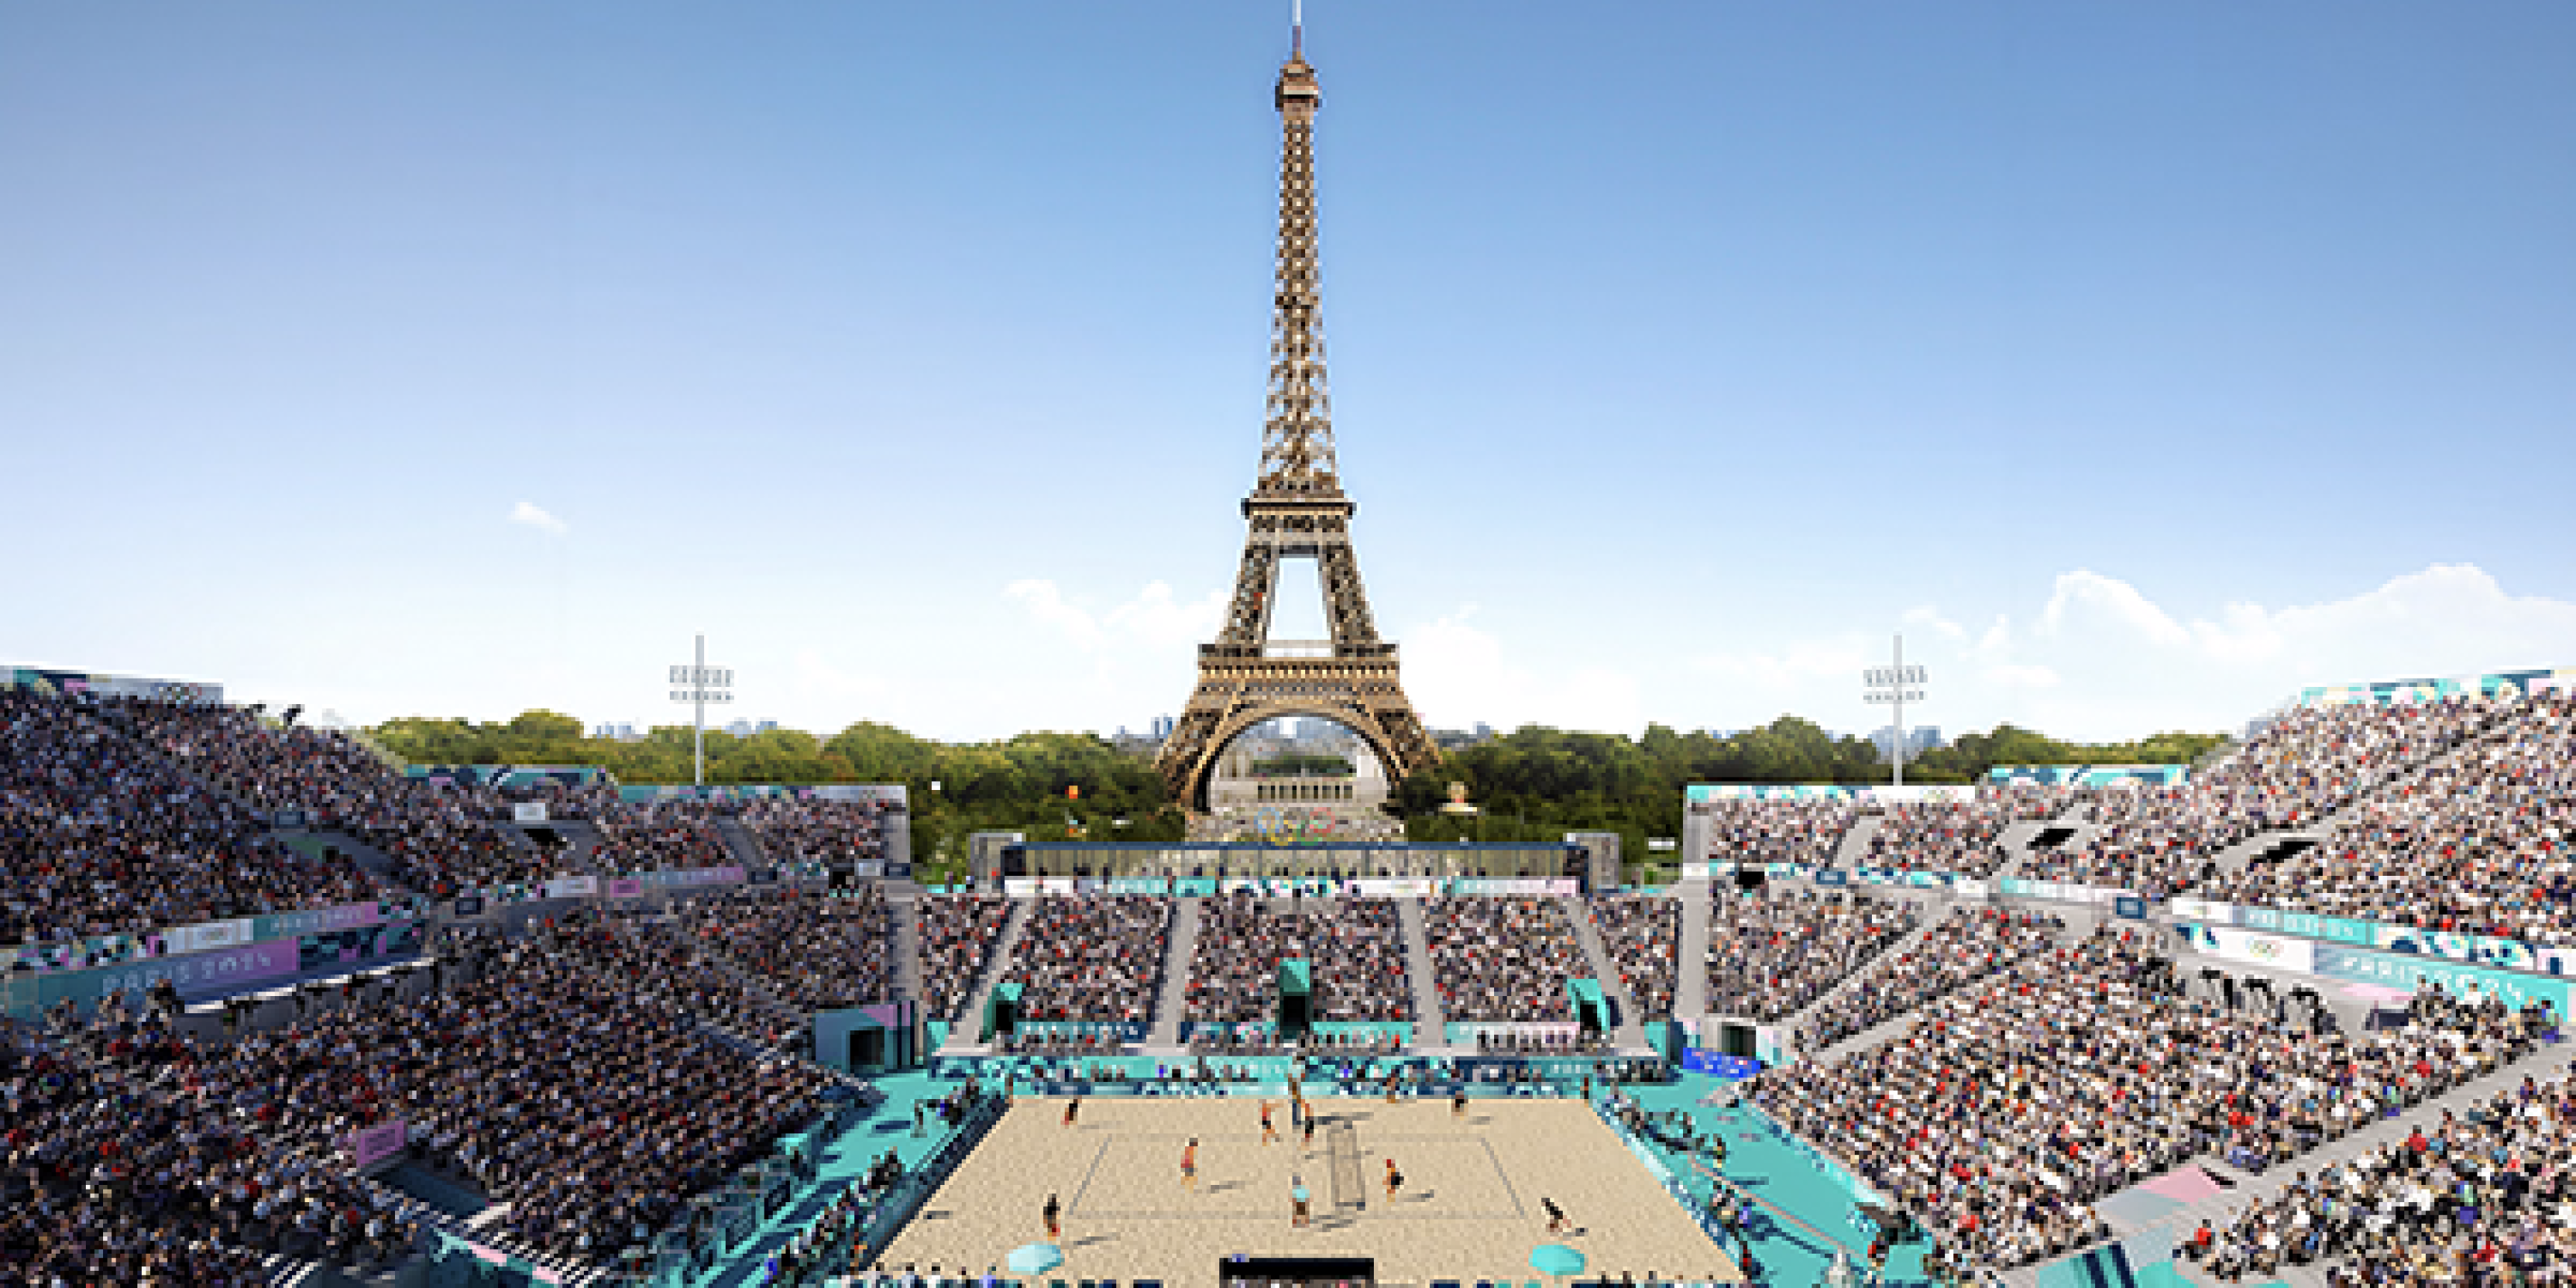 Arquitectura y paisaje urbano de París en los Juegos Olímpicos 2024